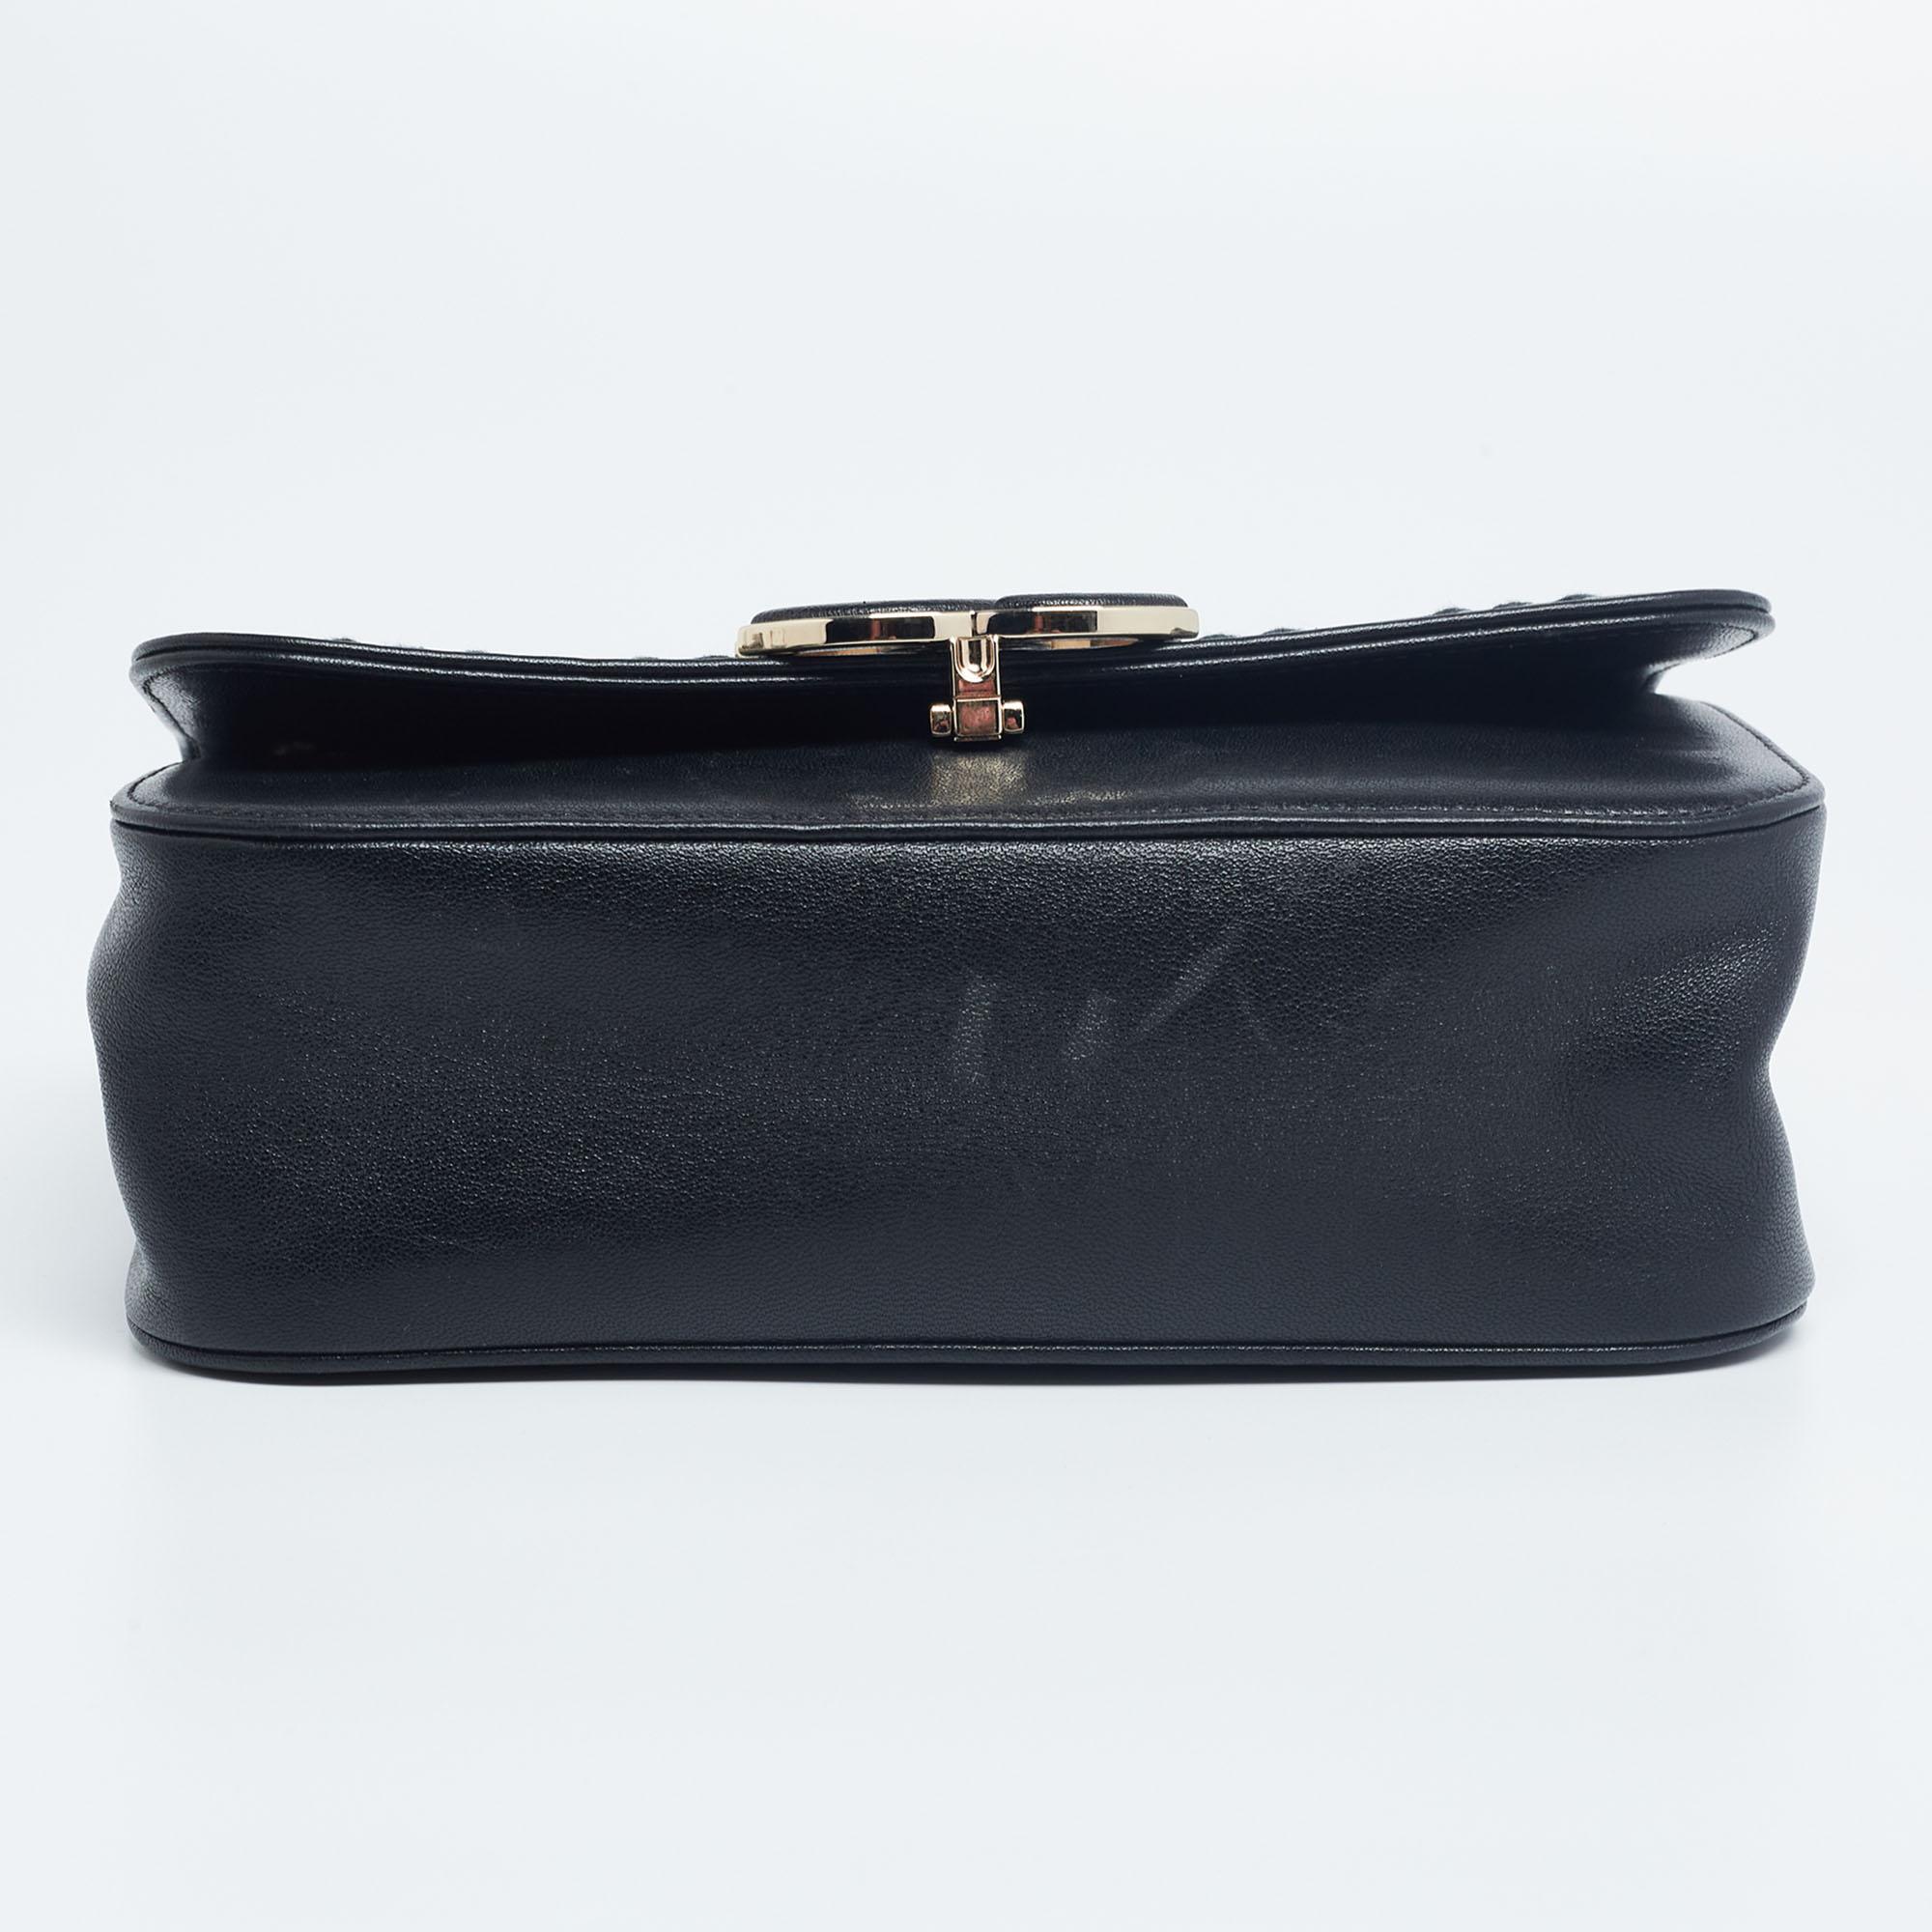 Chanel Black/Gold Chevron Leather CC Subtle Flap Bag 1